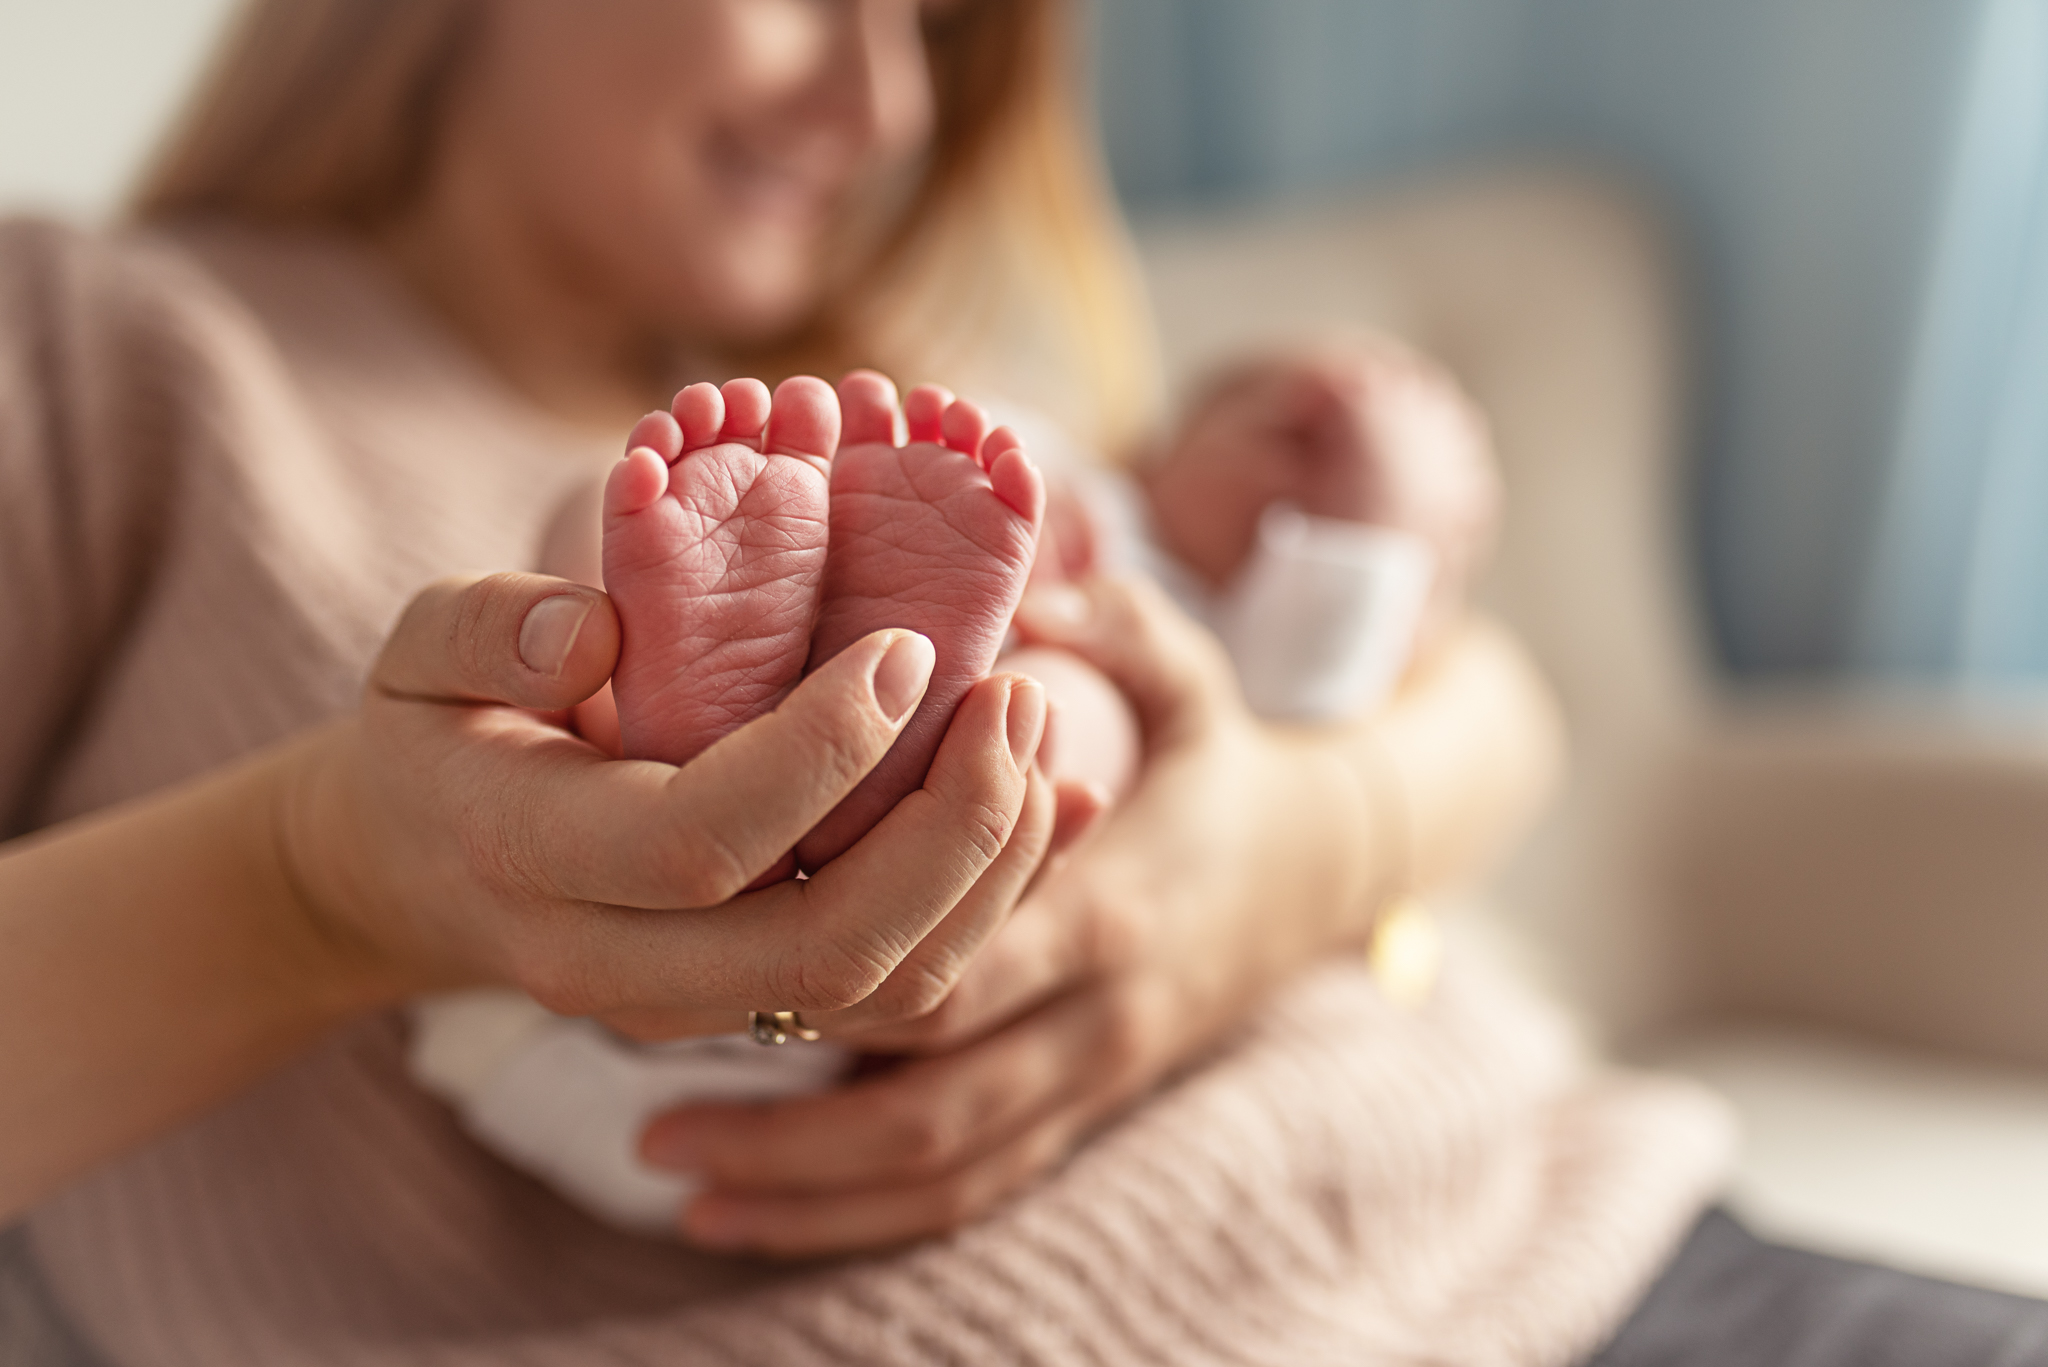 malutkie stópki noworodka w dłoniach mamy